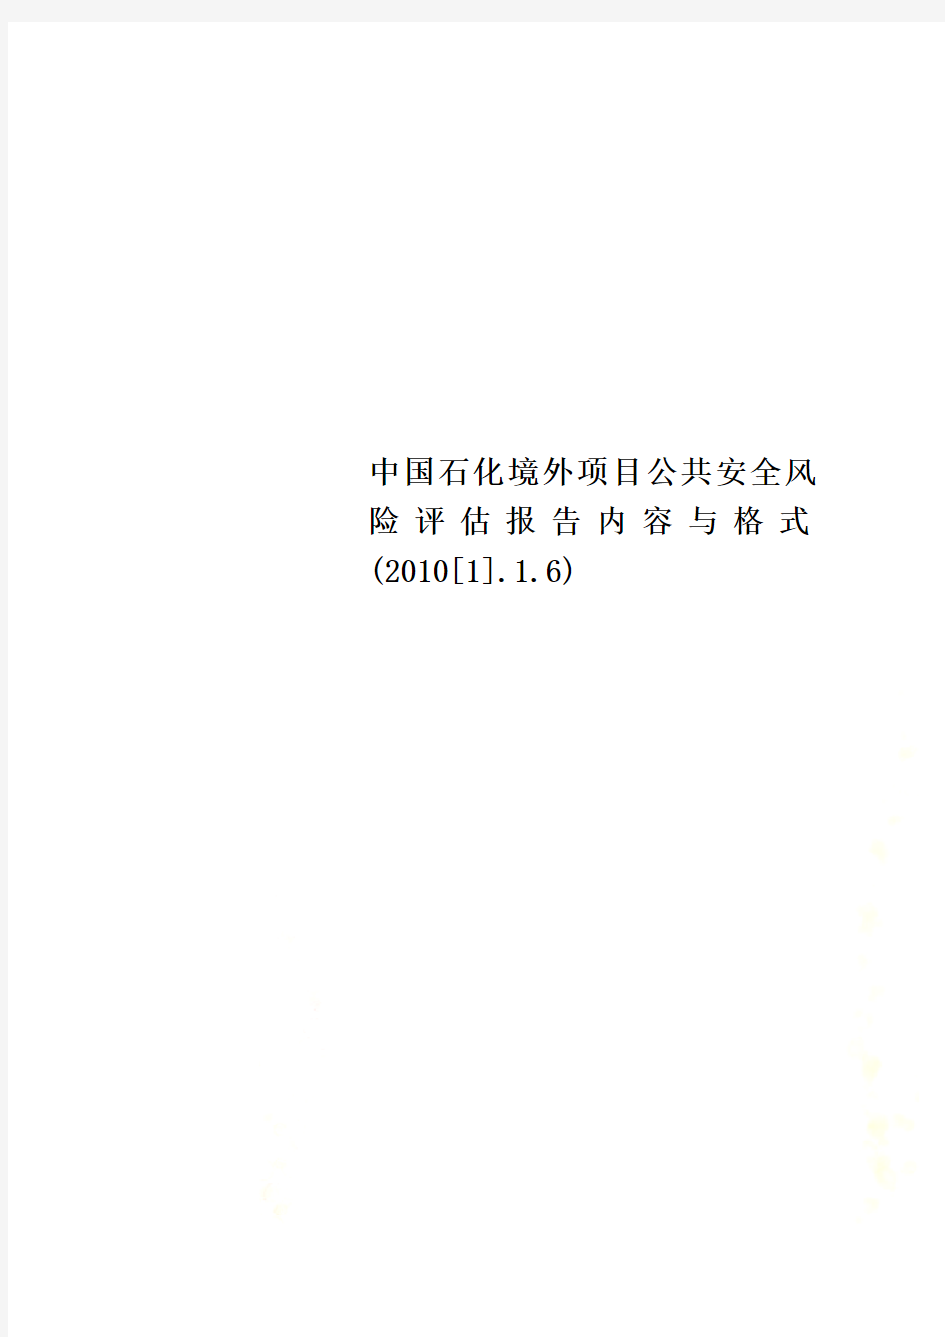 中国石化境外项目公共安全风险评估报告内容与格式(2010[1].1.6)